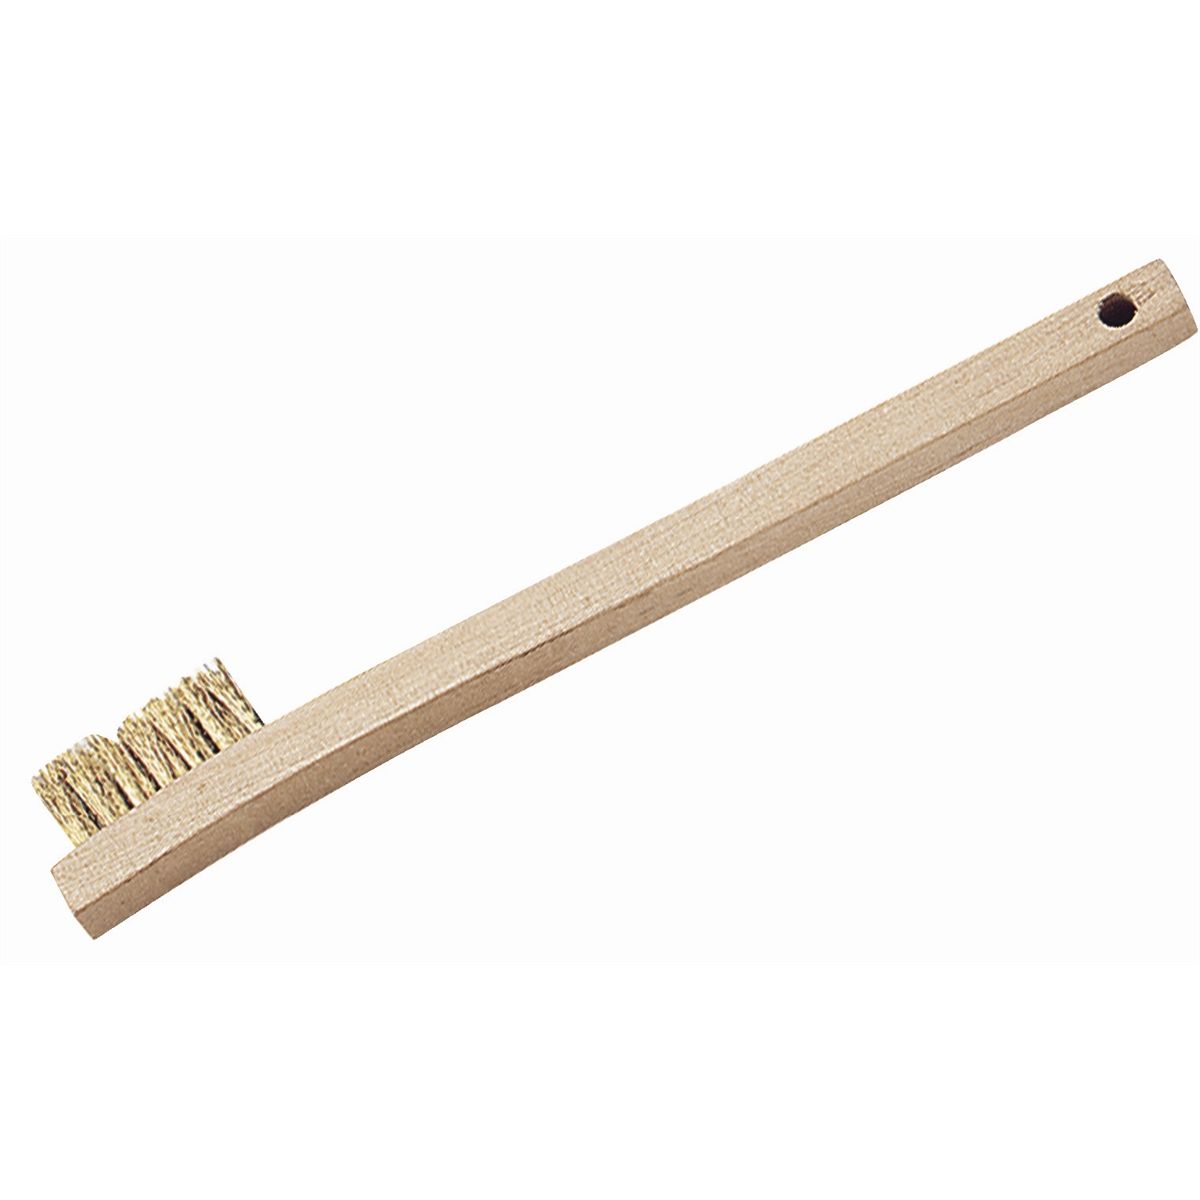 Toothbrush Style Brass Welders Brush